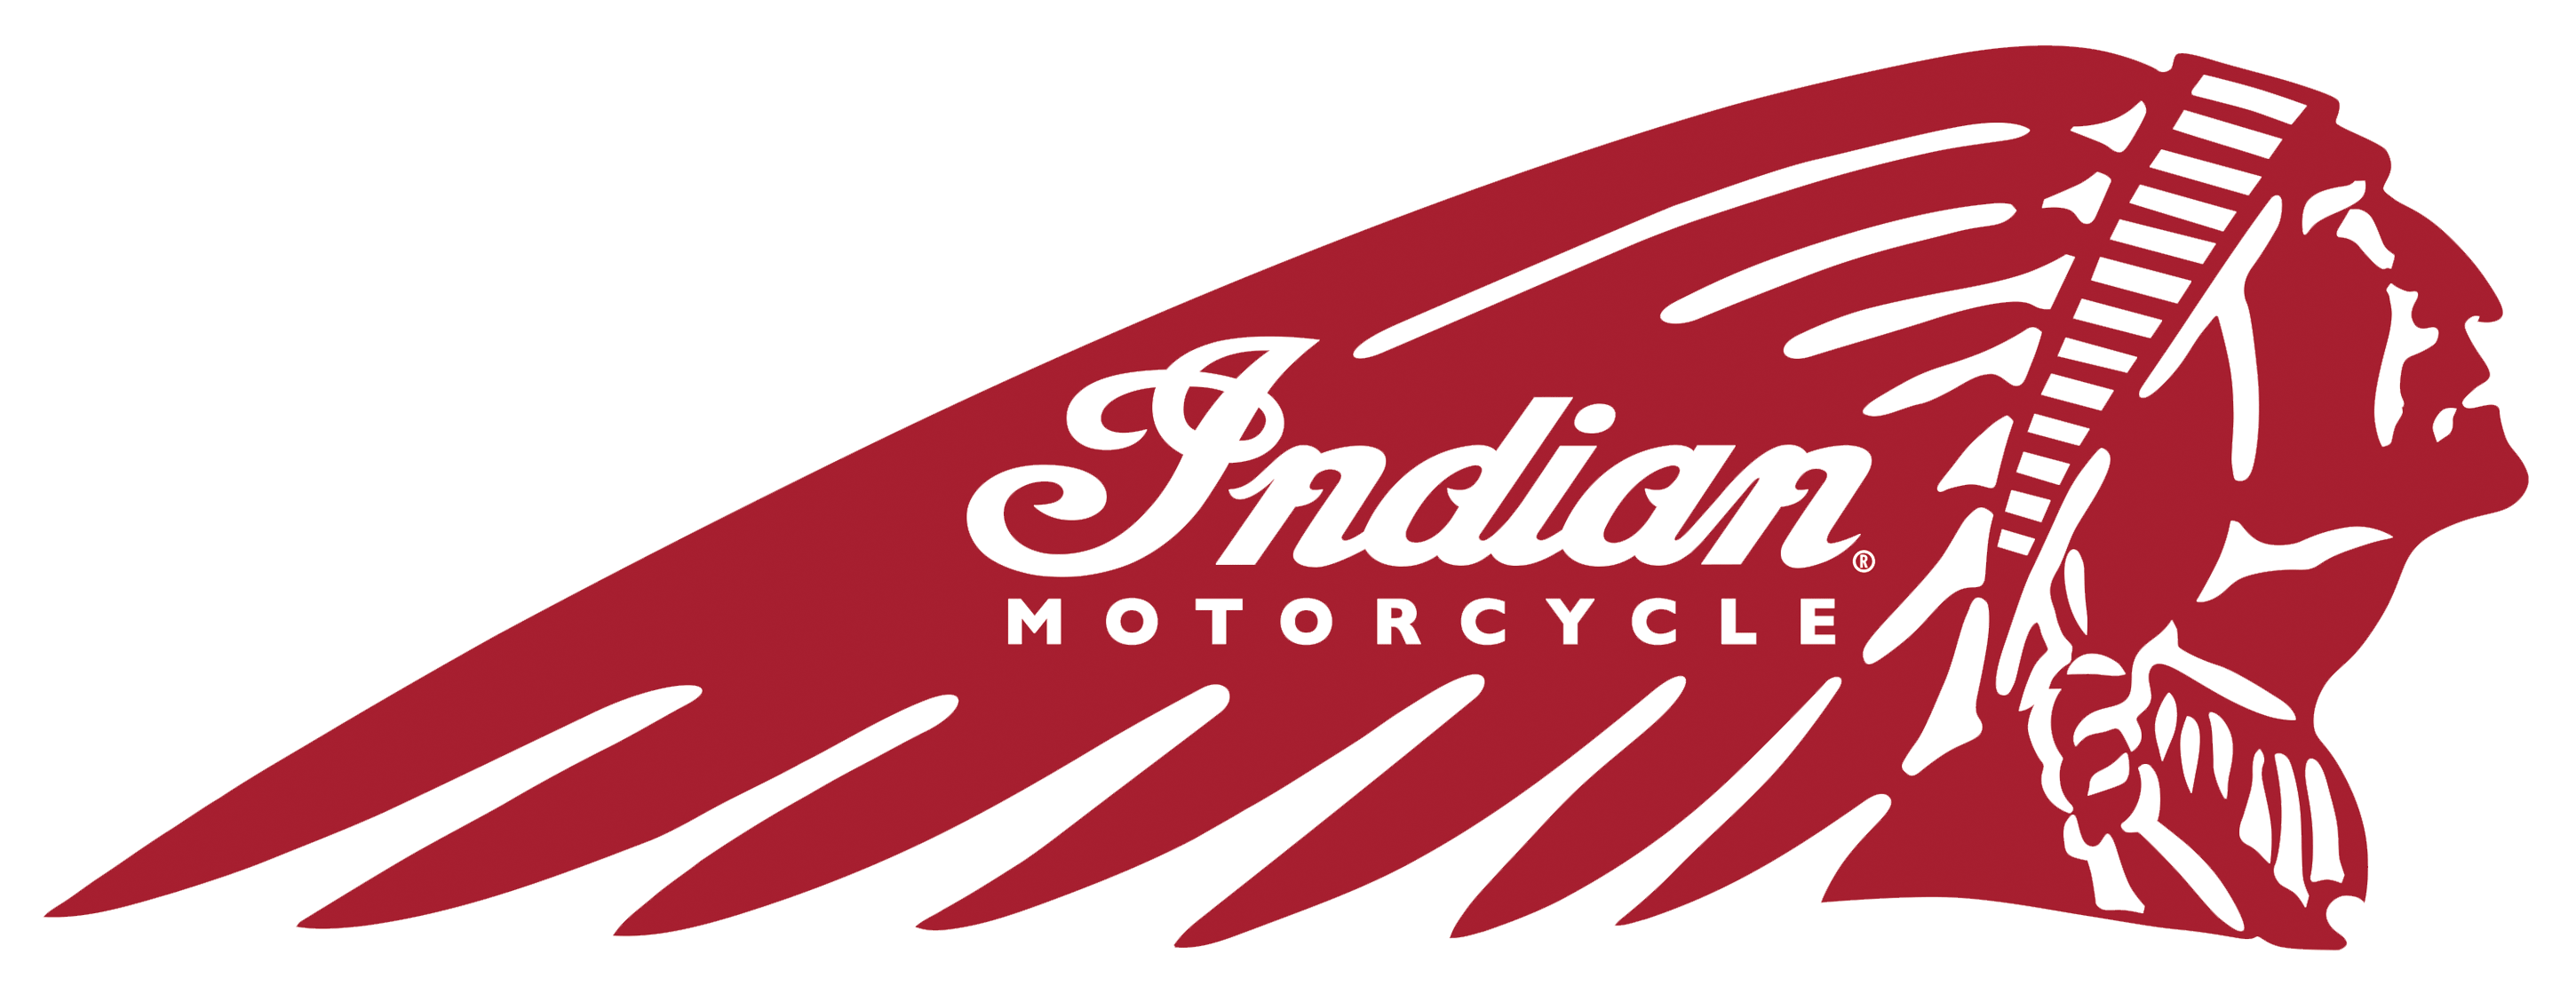 Indian Logo - Indian logo | Motorcycle Brands